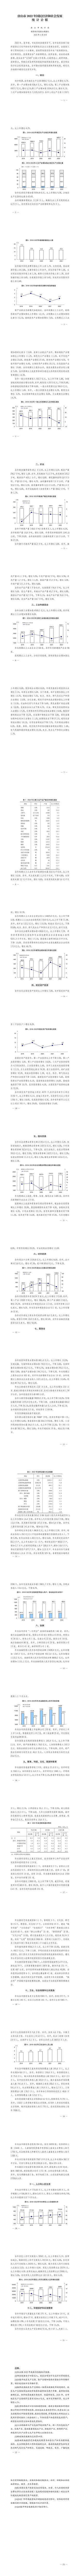 唐山市2022年国民经济和社会发展统计公报